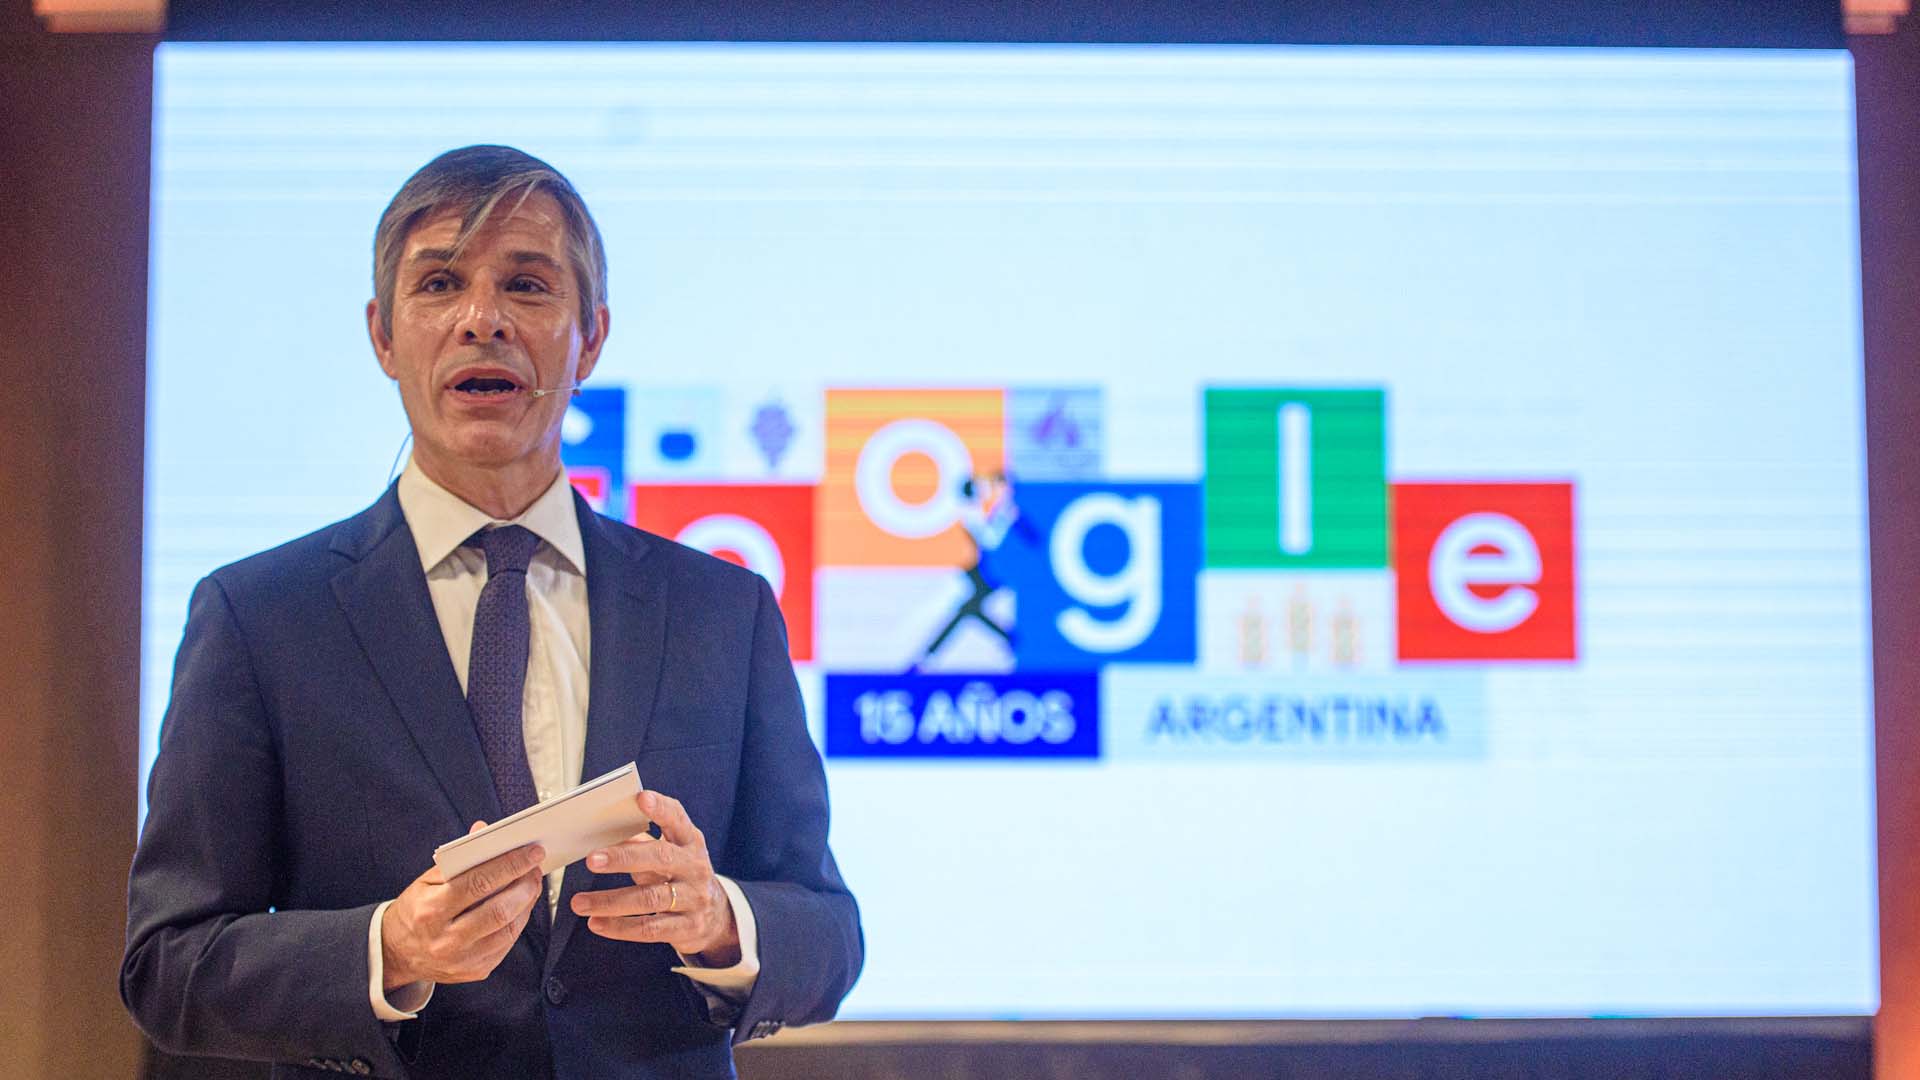 Google celebró sus 15 años en Argentina con anuncios sobre conectividad, educación y ayuda a proyectos de mujeres en contextos vulnerables